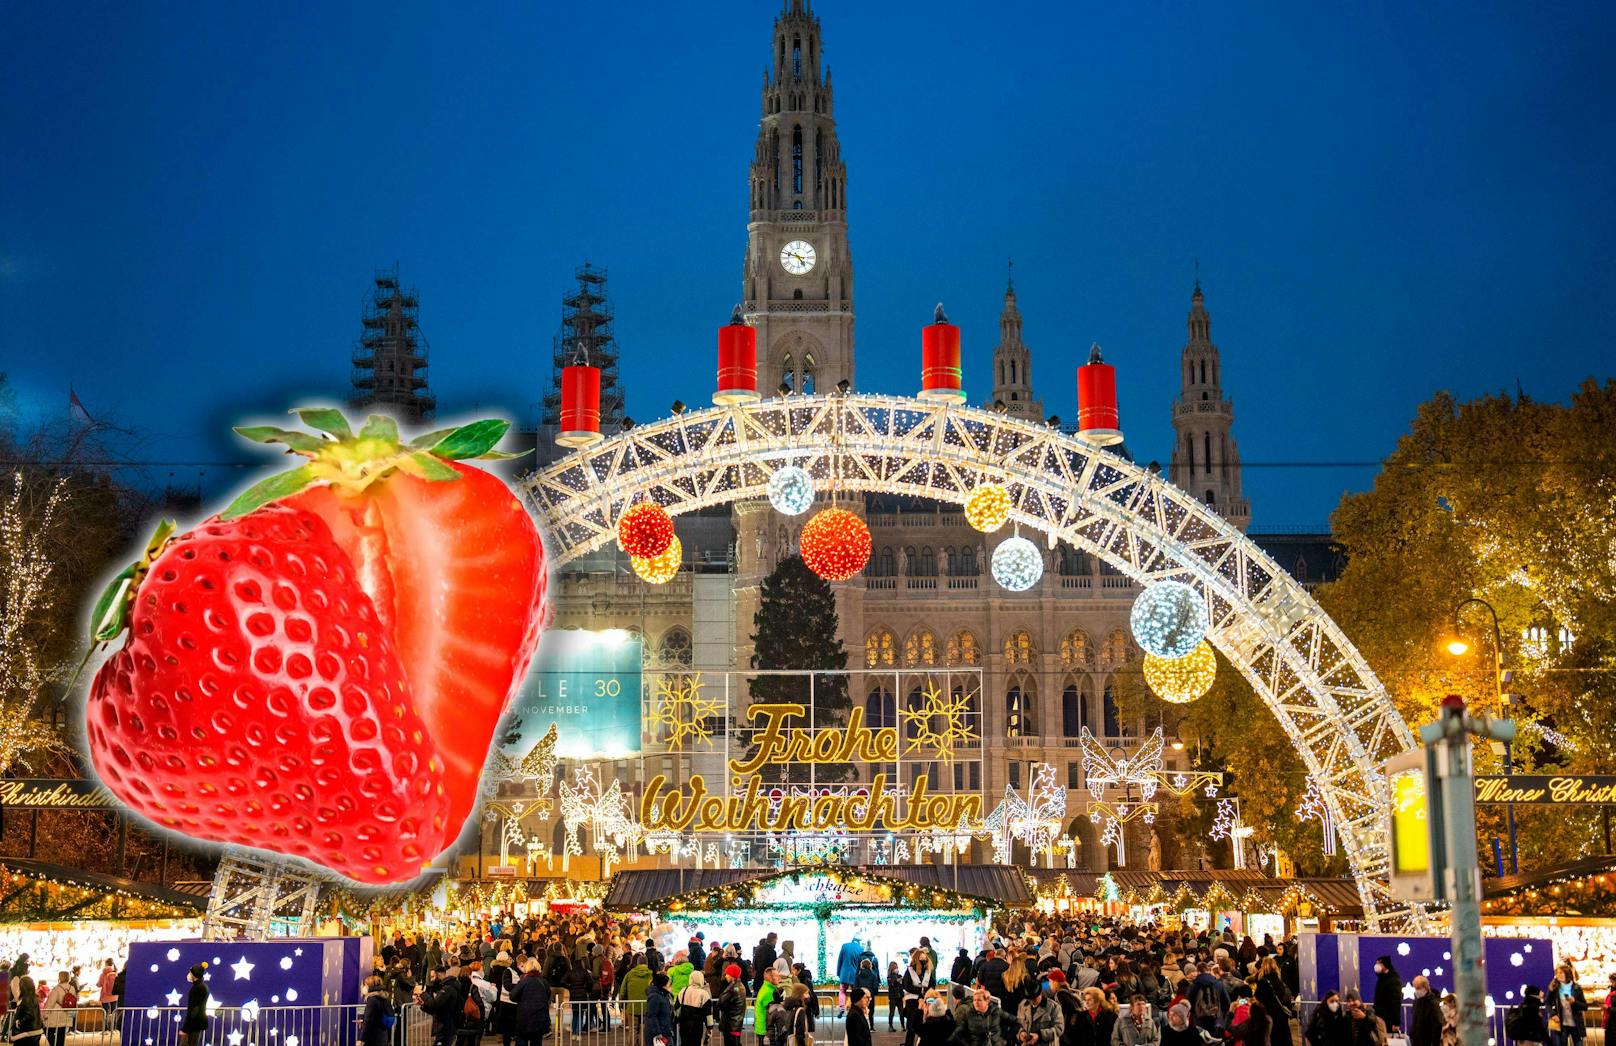 Fürs Klima – Erdbeer-Verbot am Wiener Christkindlmarkt